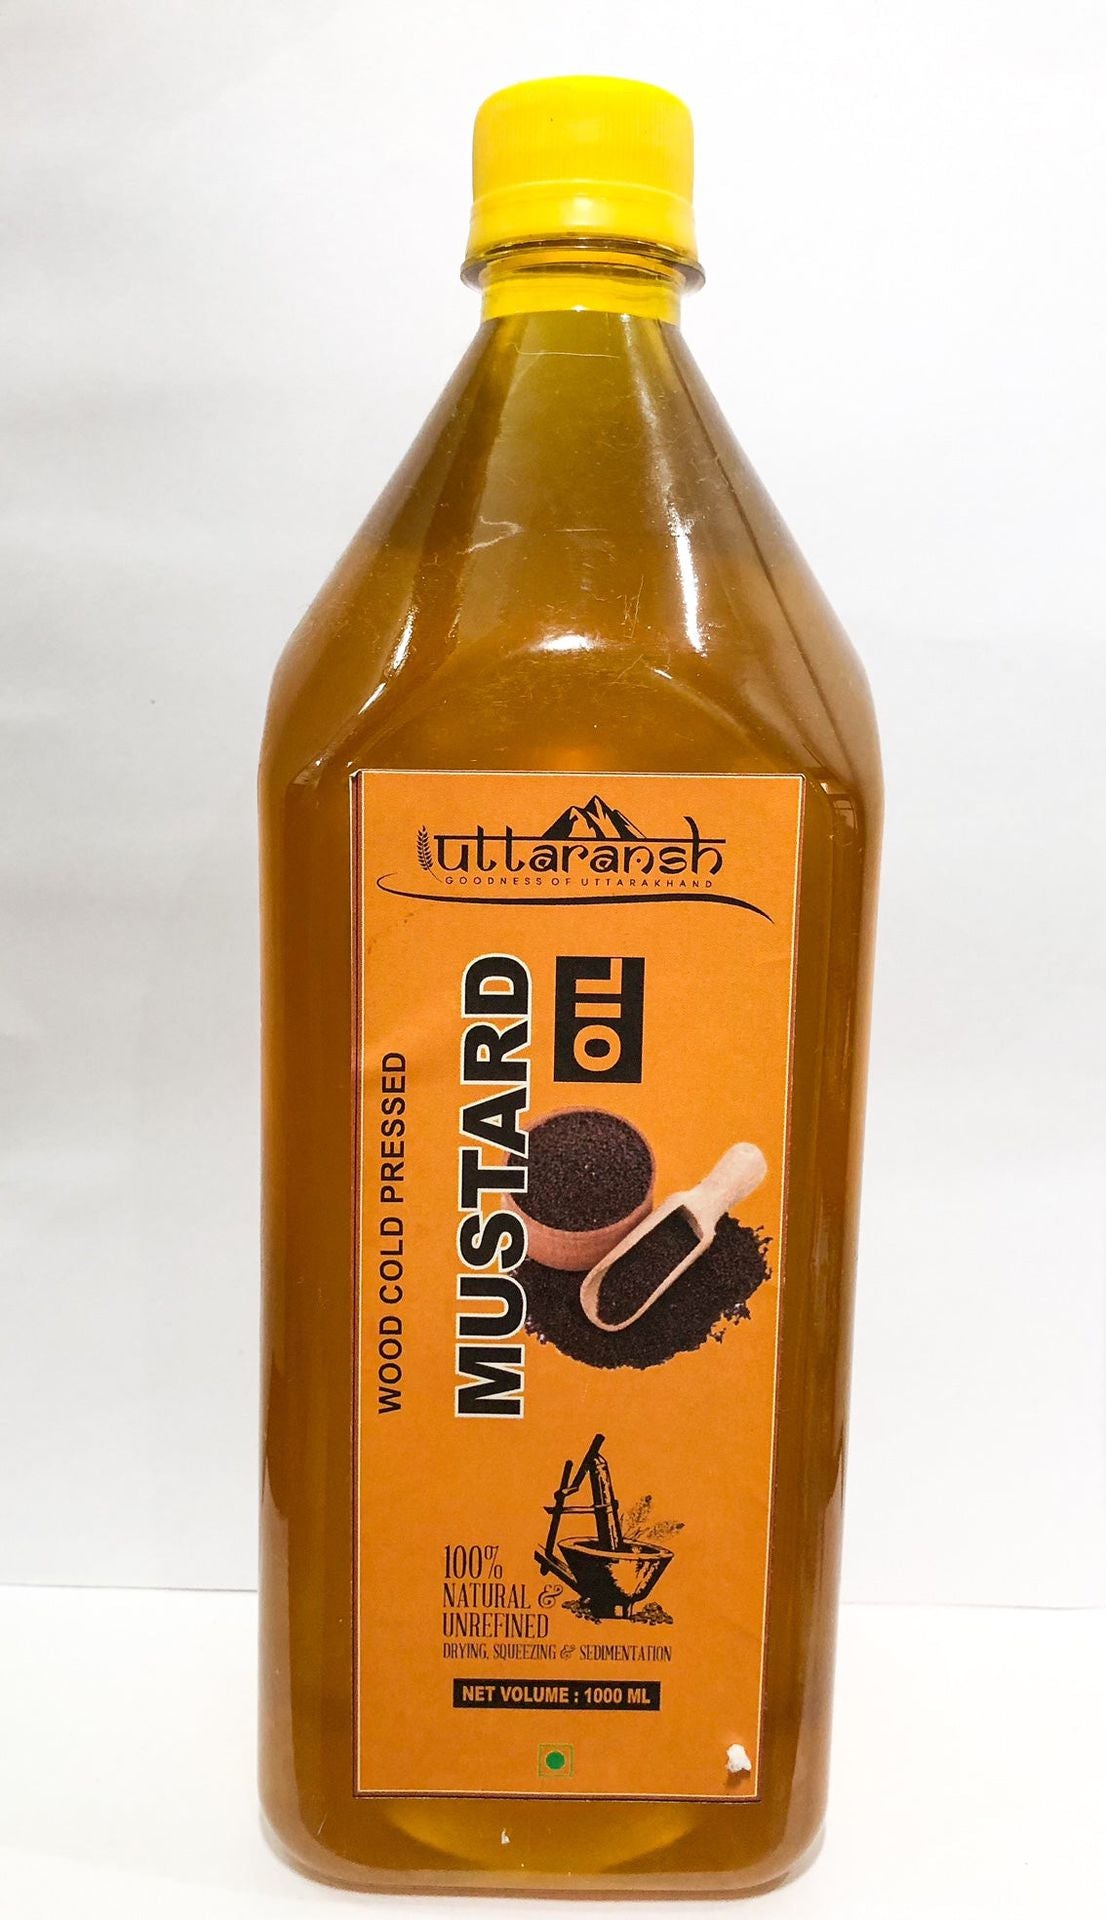 Uttaransh Cold Pressed Mustard Oil - hfnl!fe